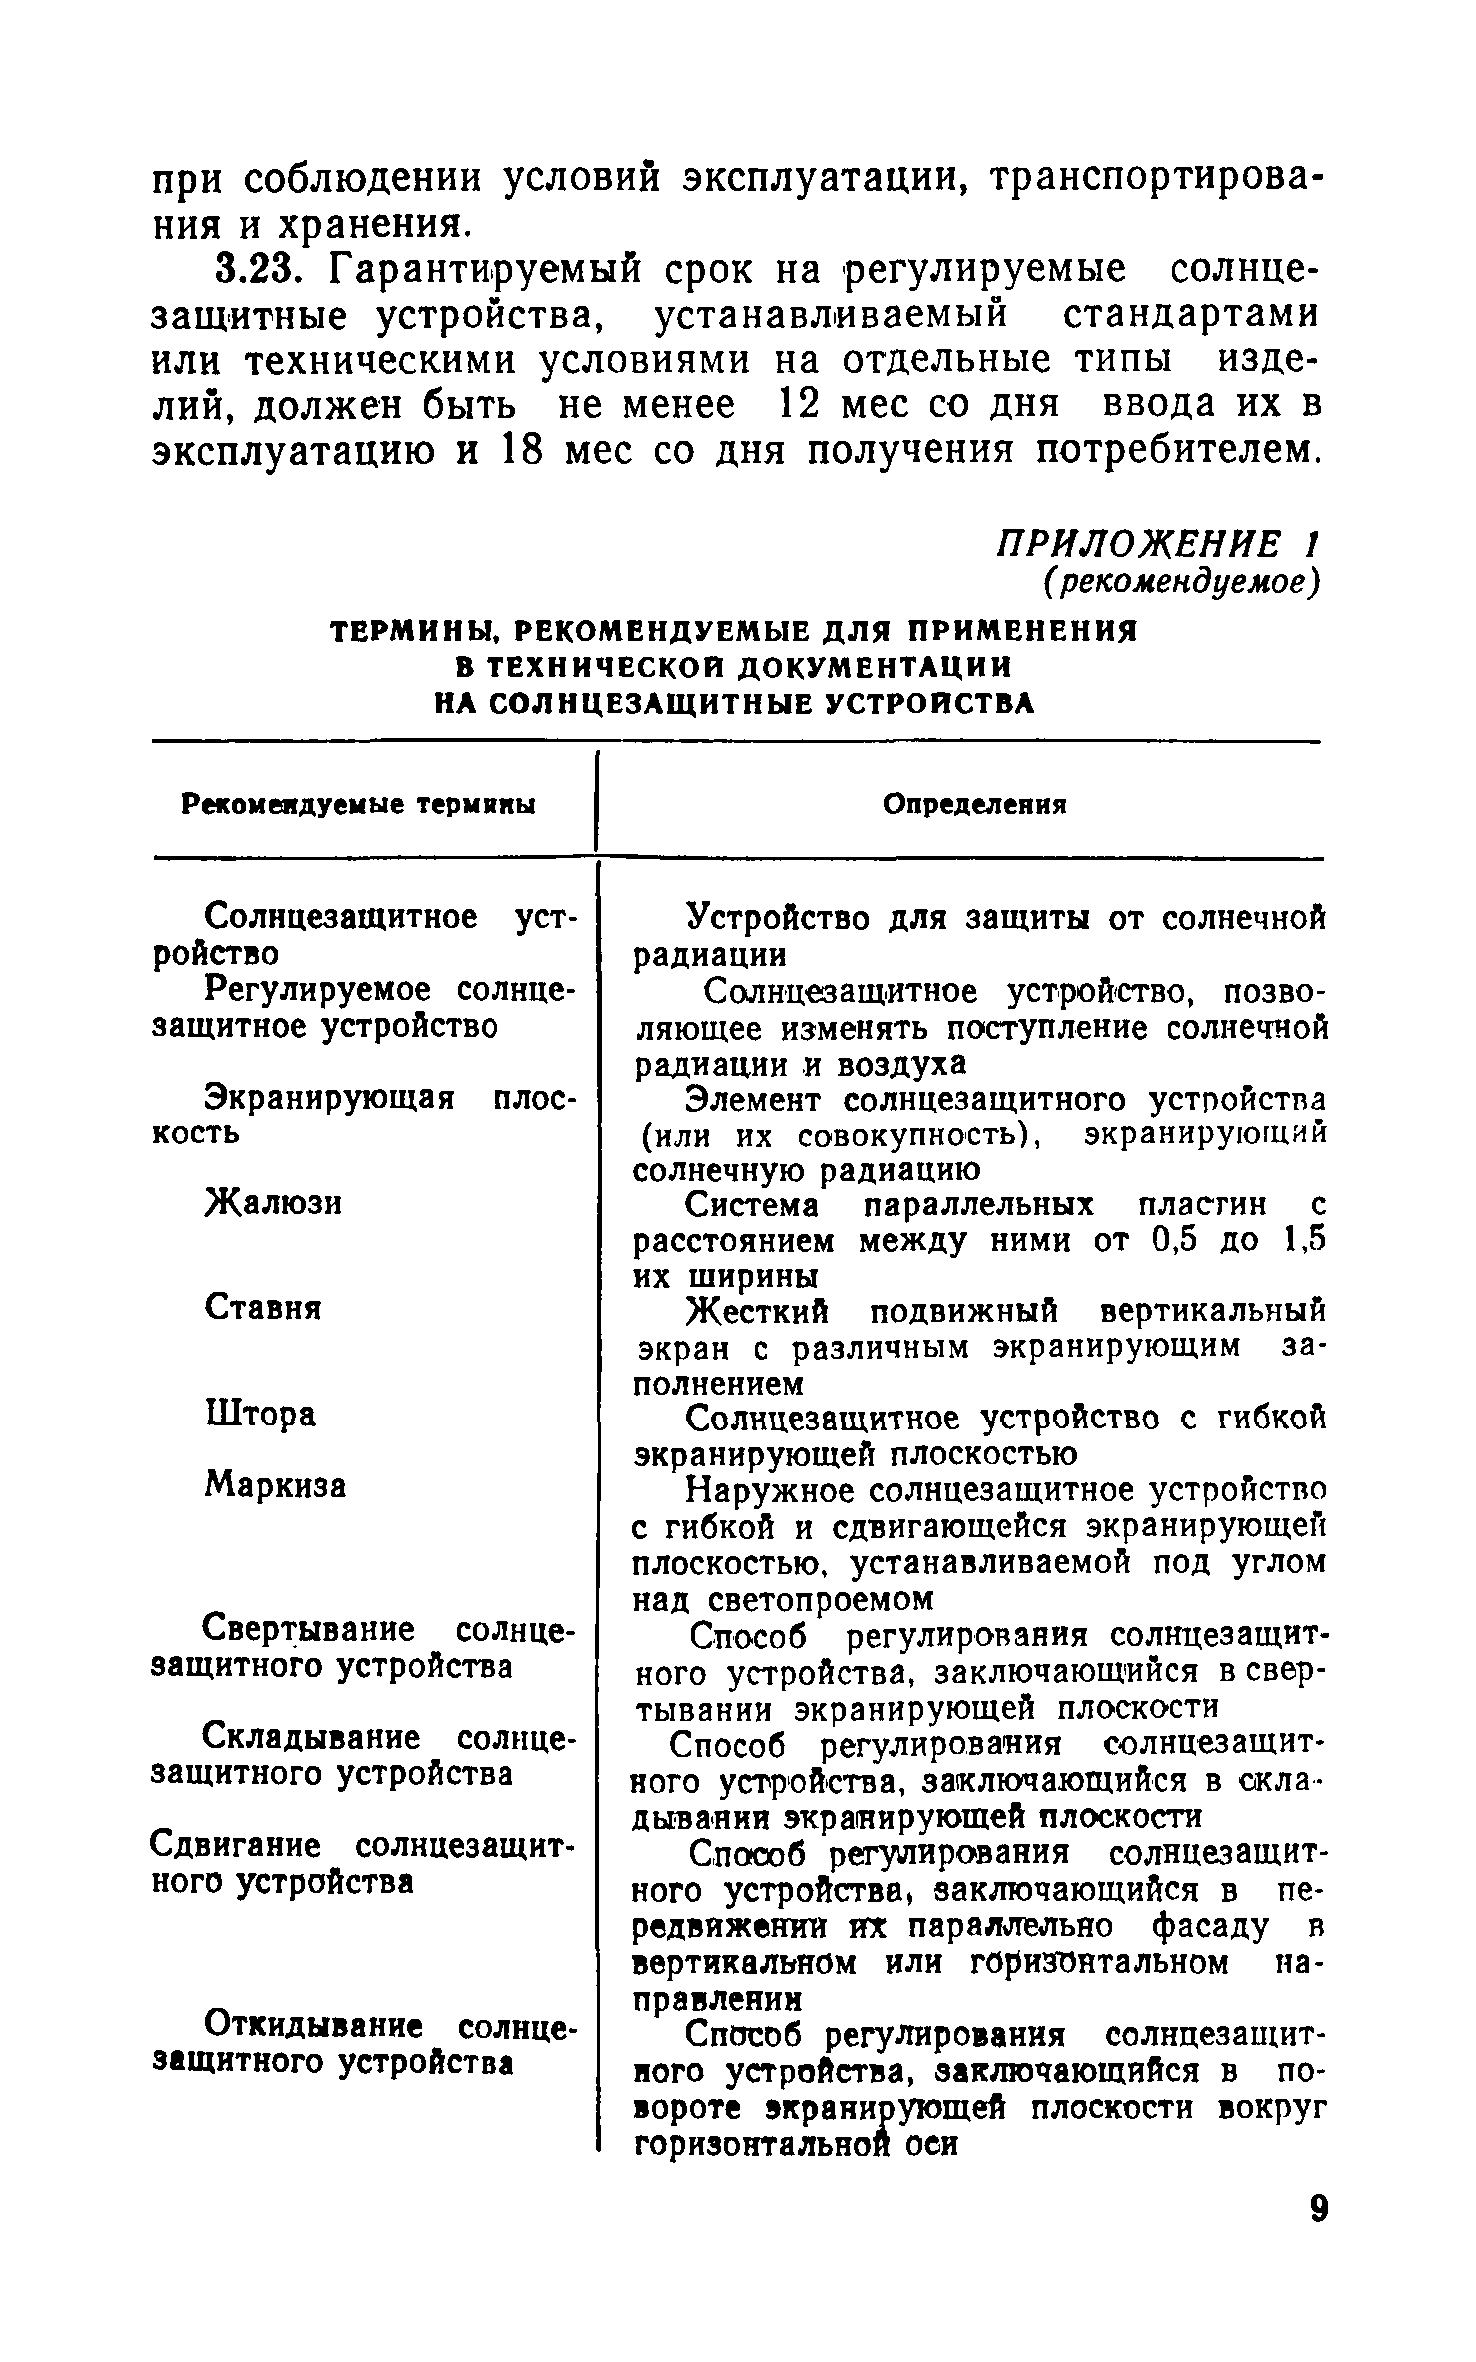 ВСН 24-75/Госгражданстрой